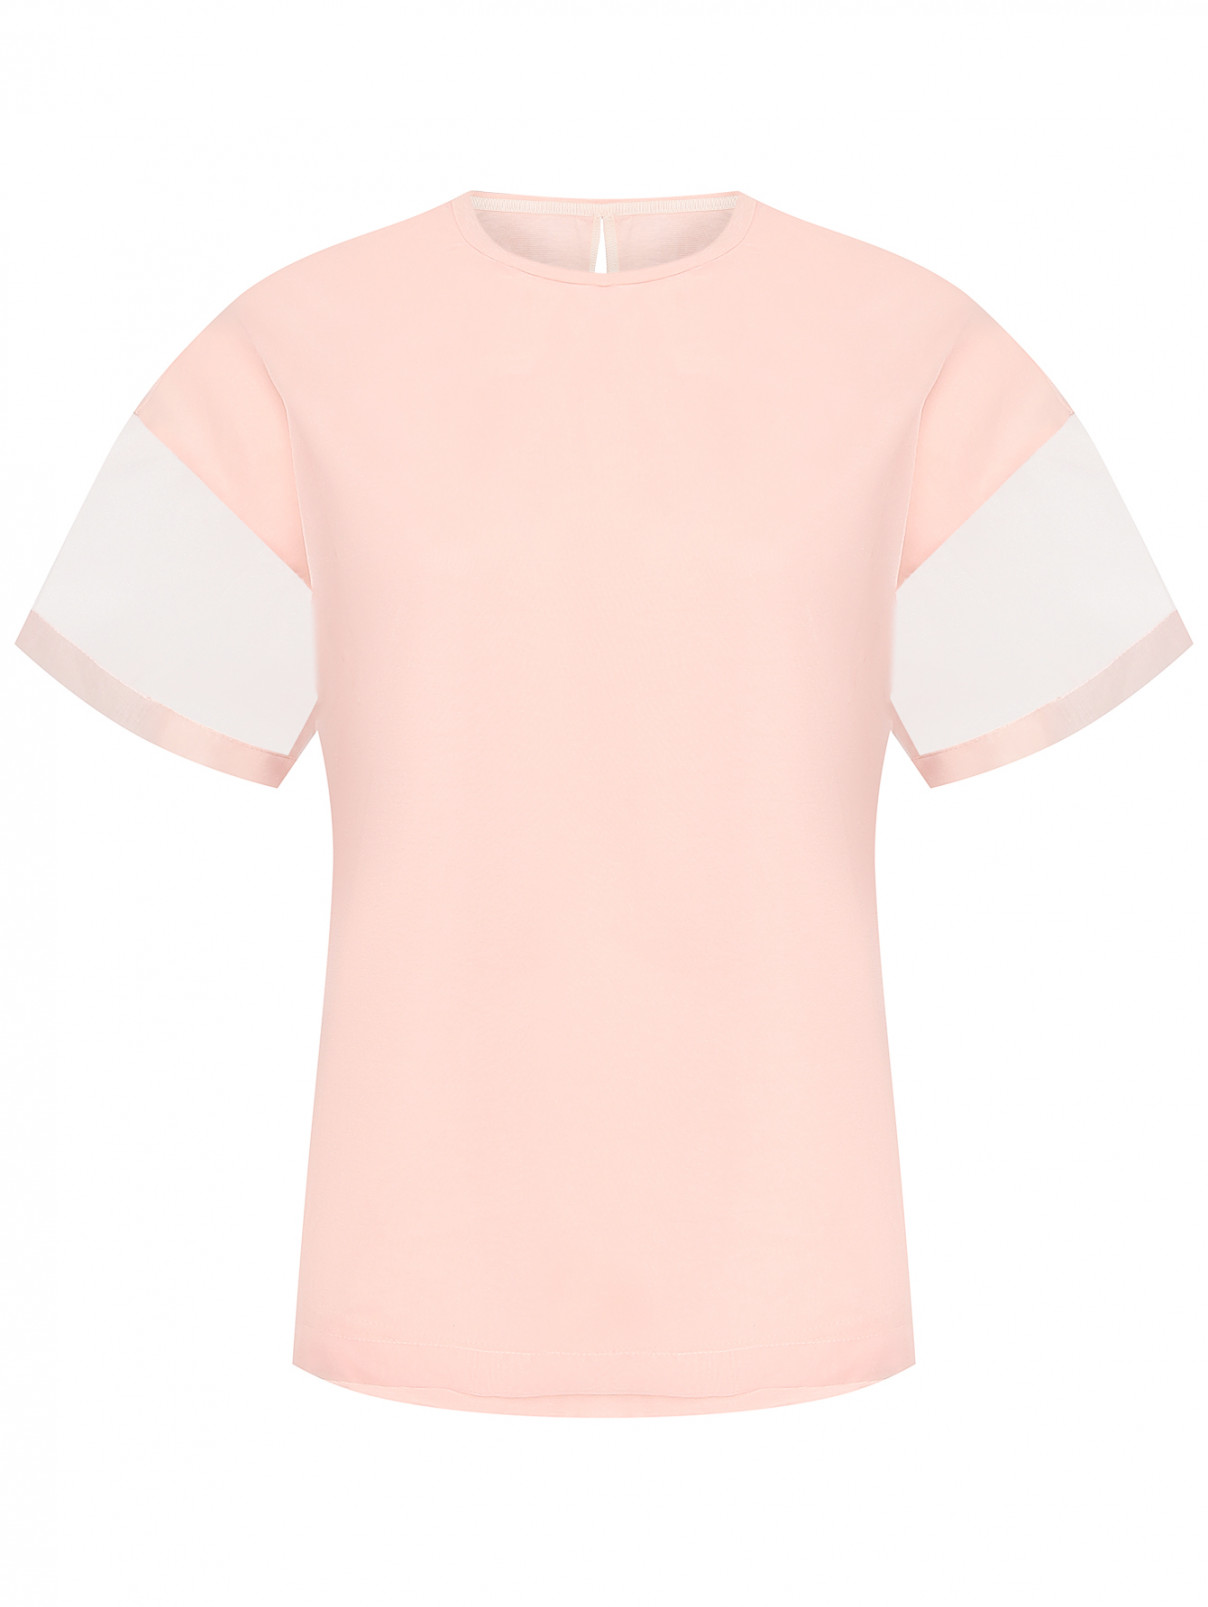 Комбинированная футболка из хлопка Tatras  –  Общий вид  – Цвет:  Розовый